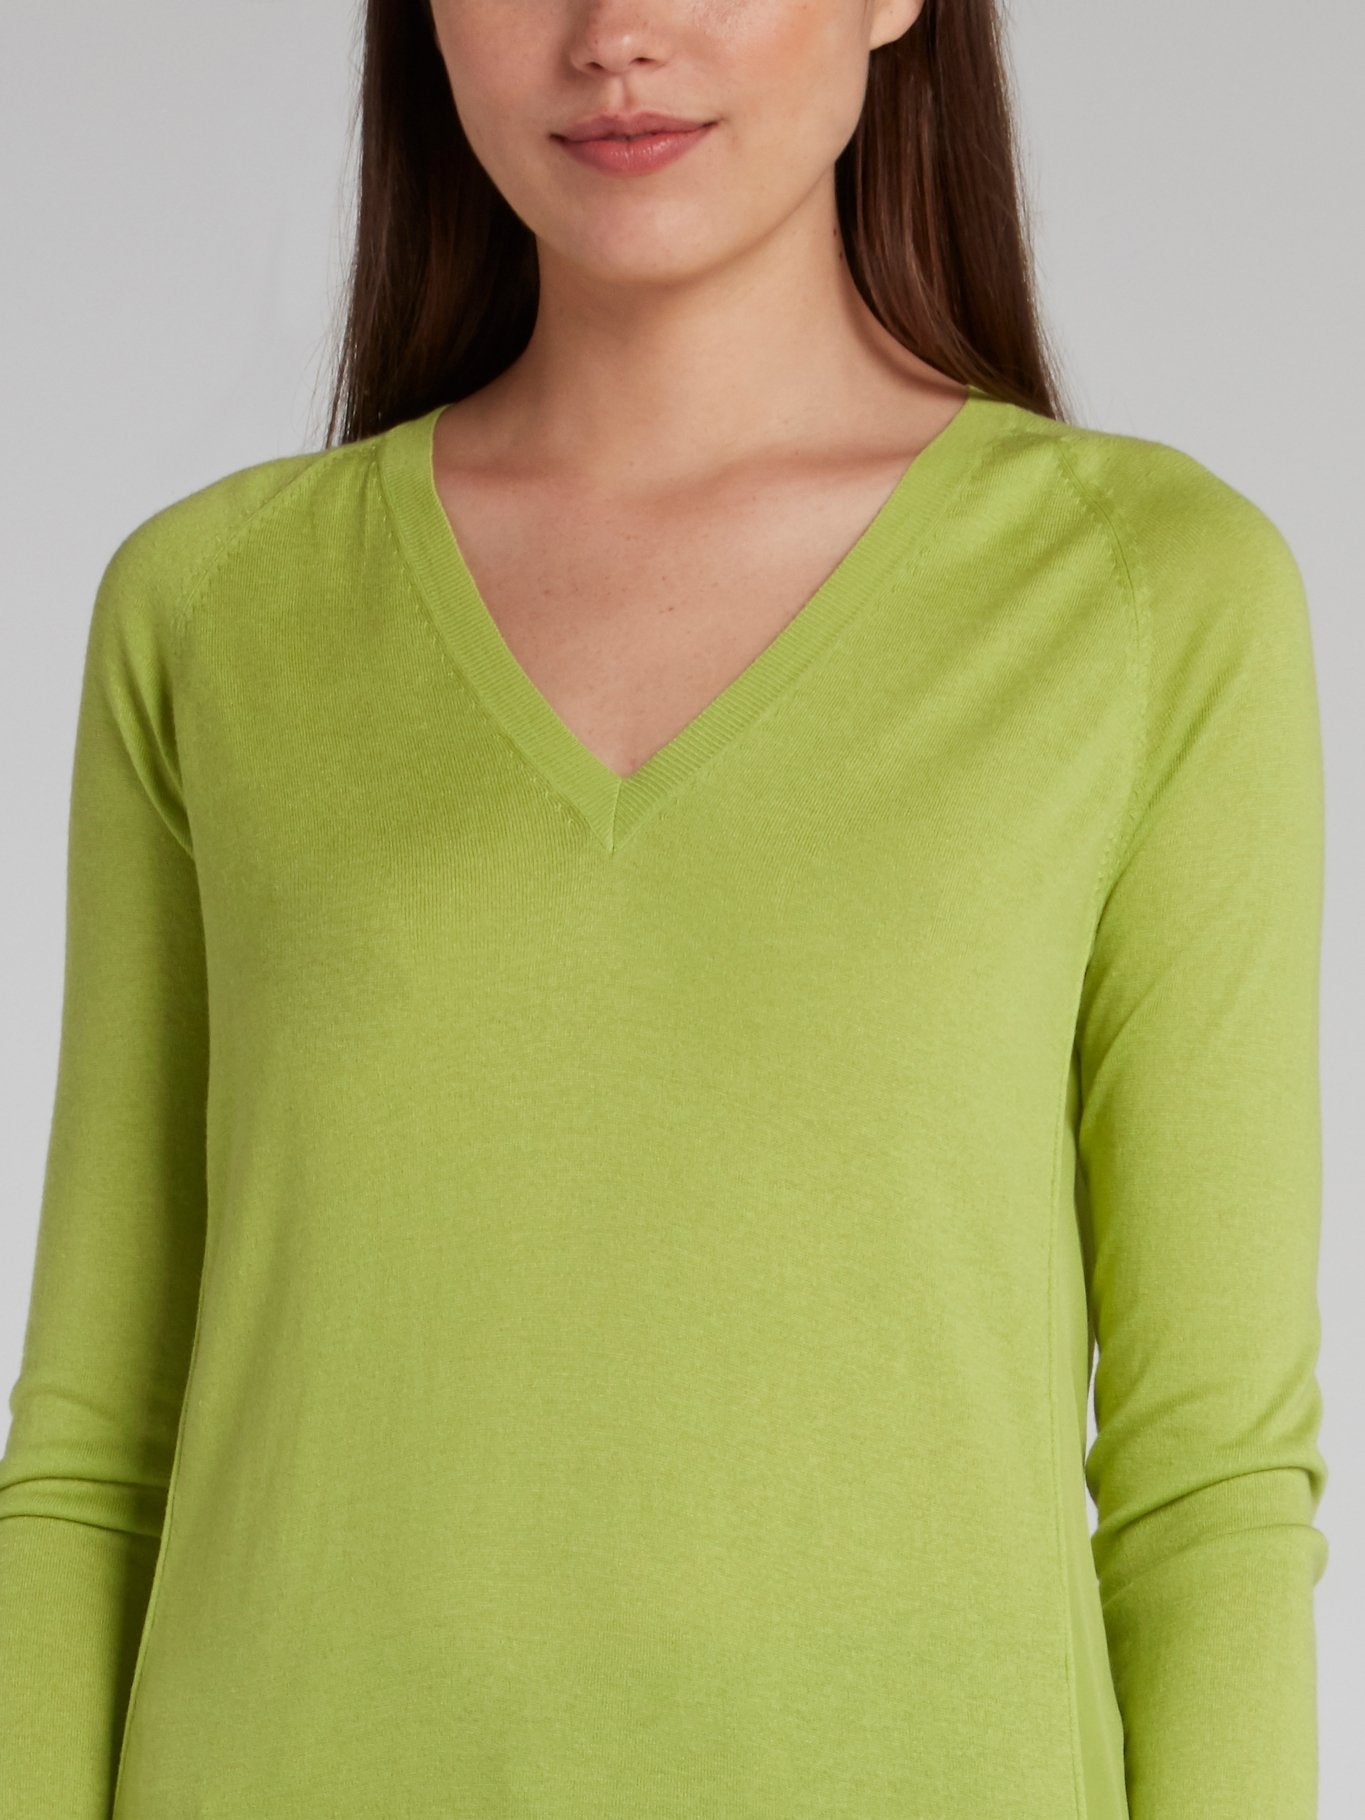 Зеленый трикотажный пуловер с V-образным вырезом